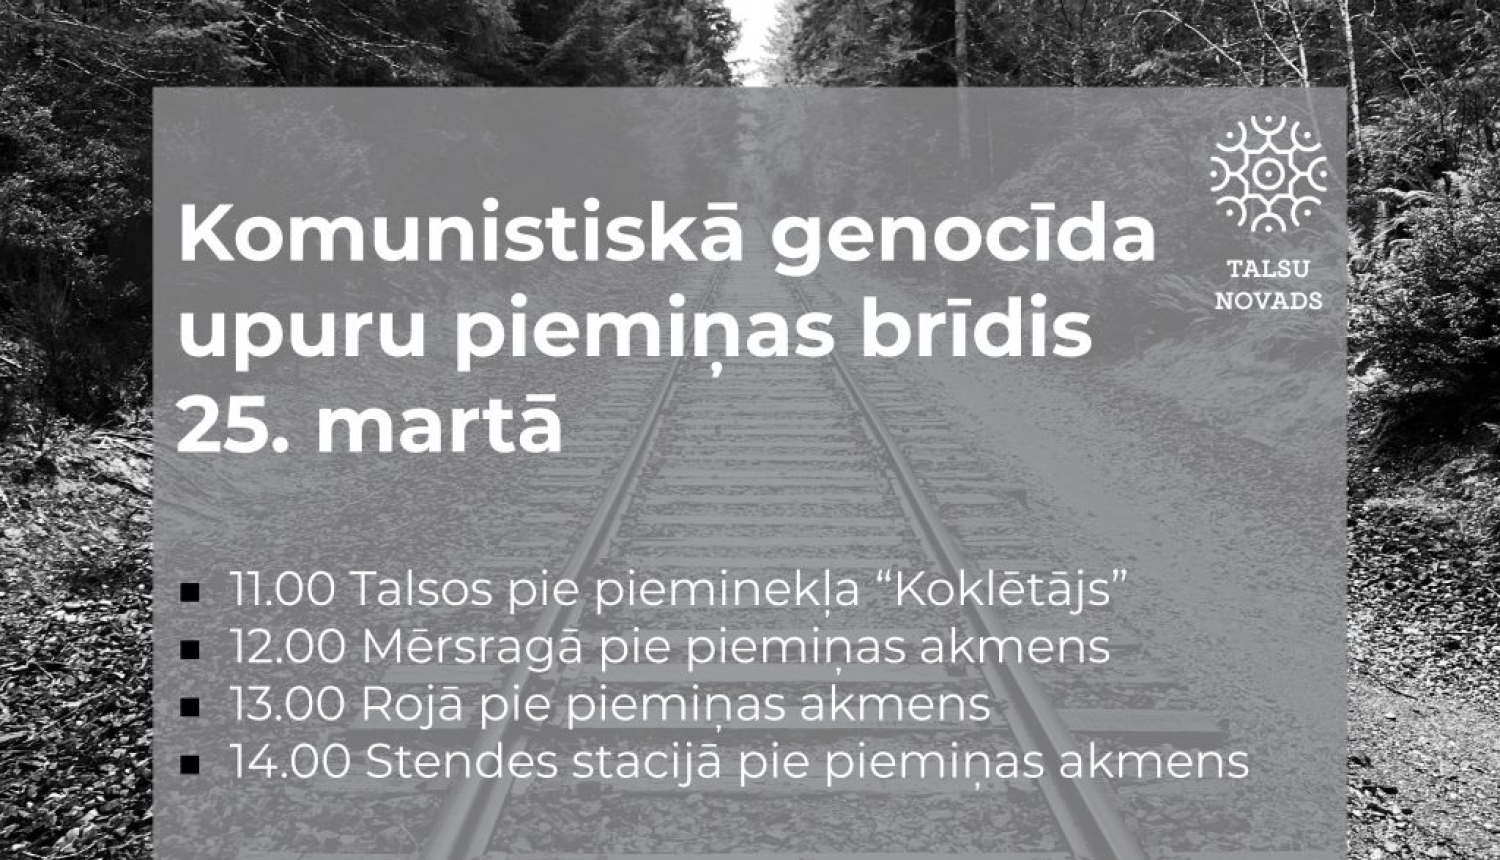 Komunistiskā genocīda upuru piemiņas dienas pasākumi Talsu novadā